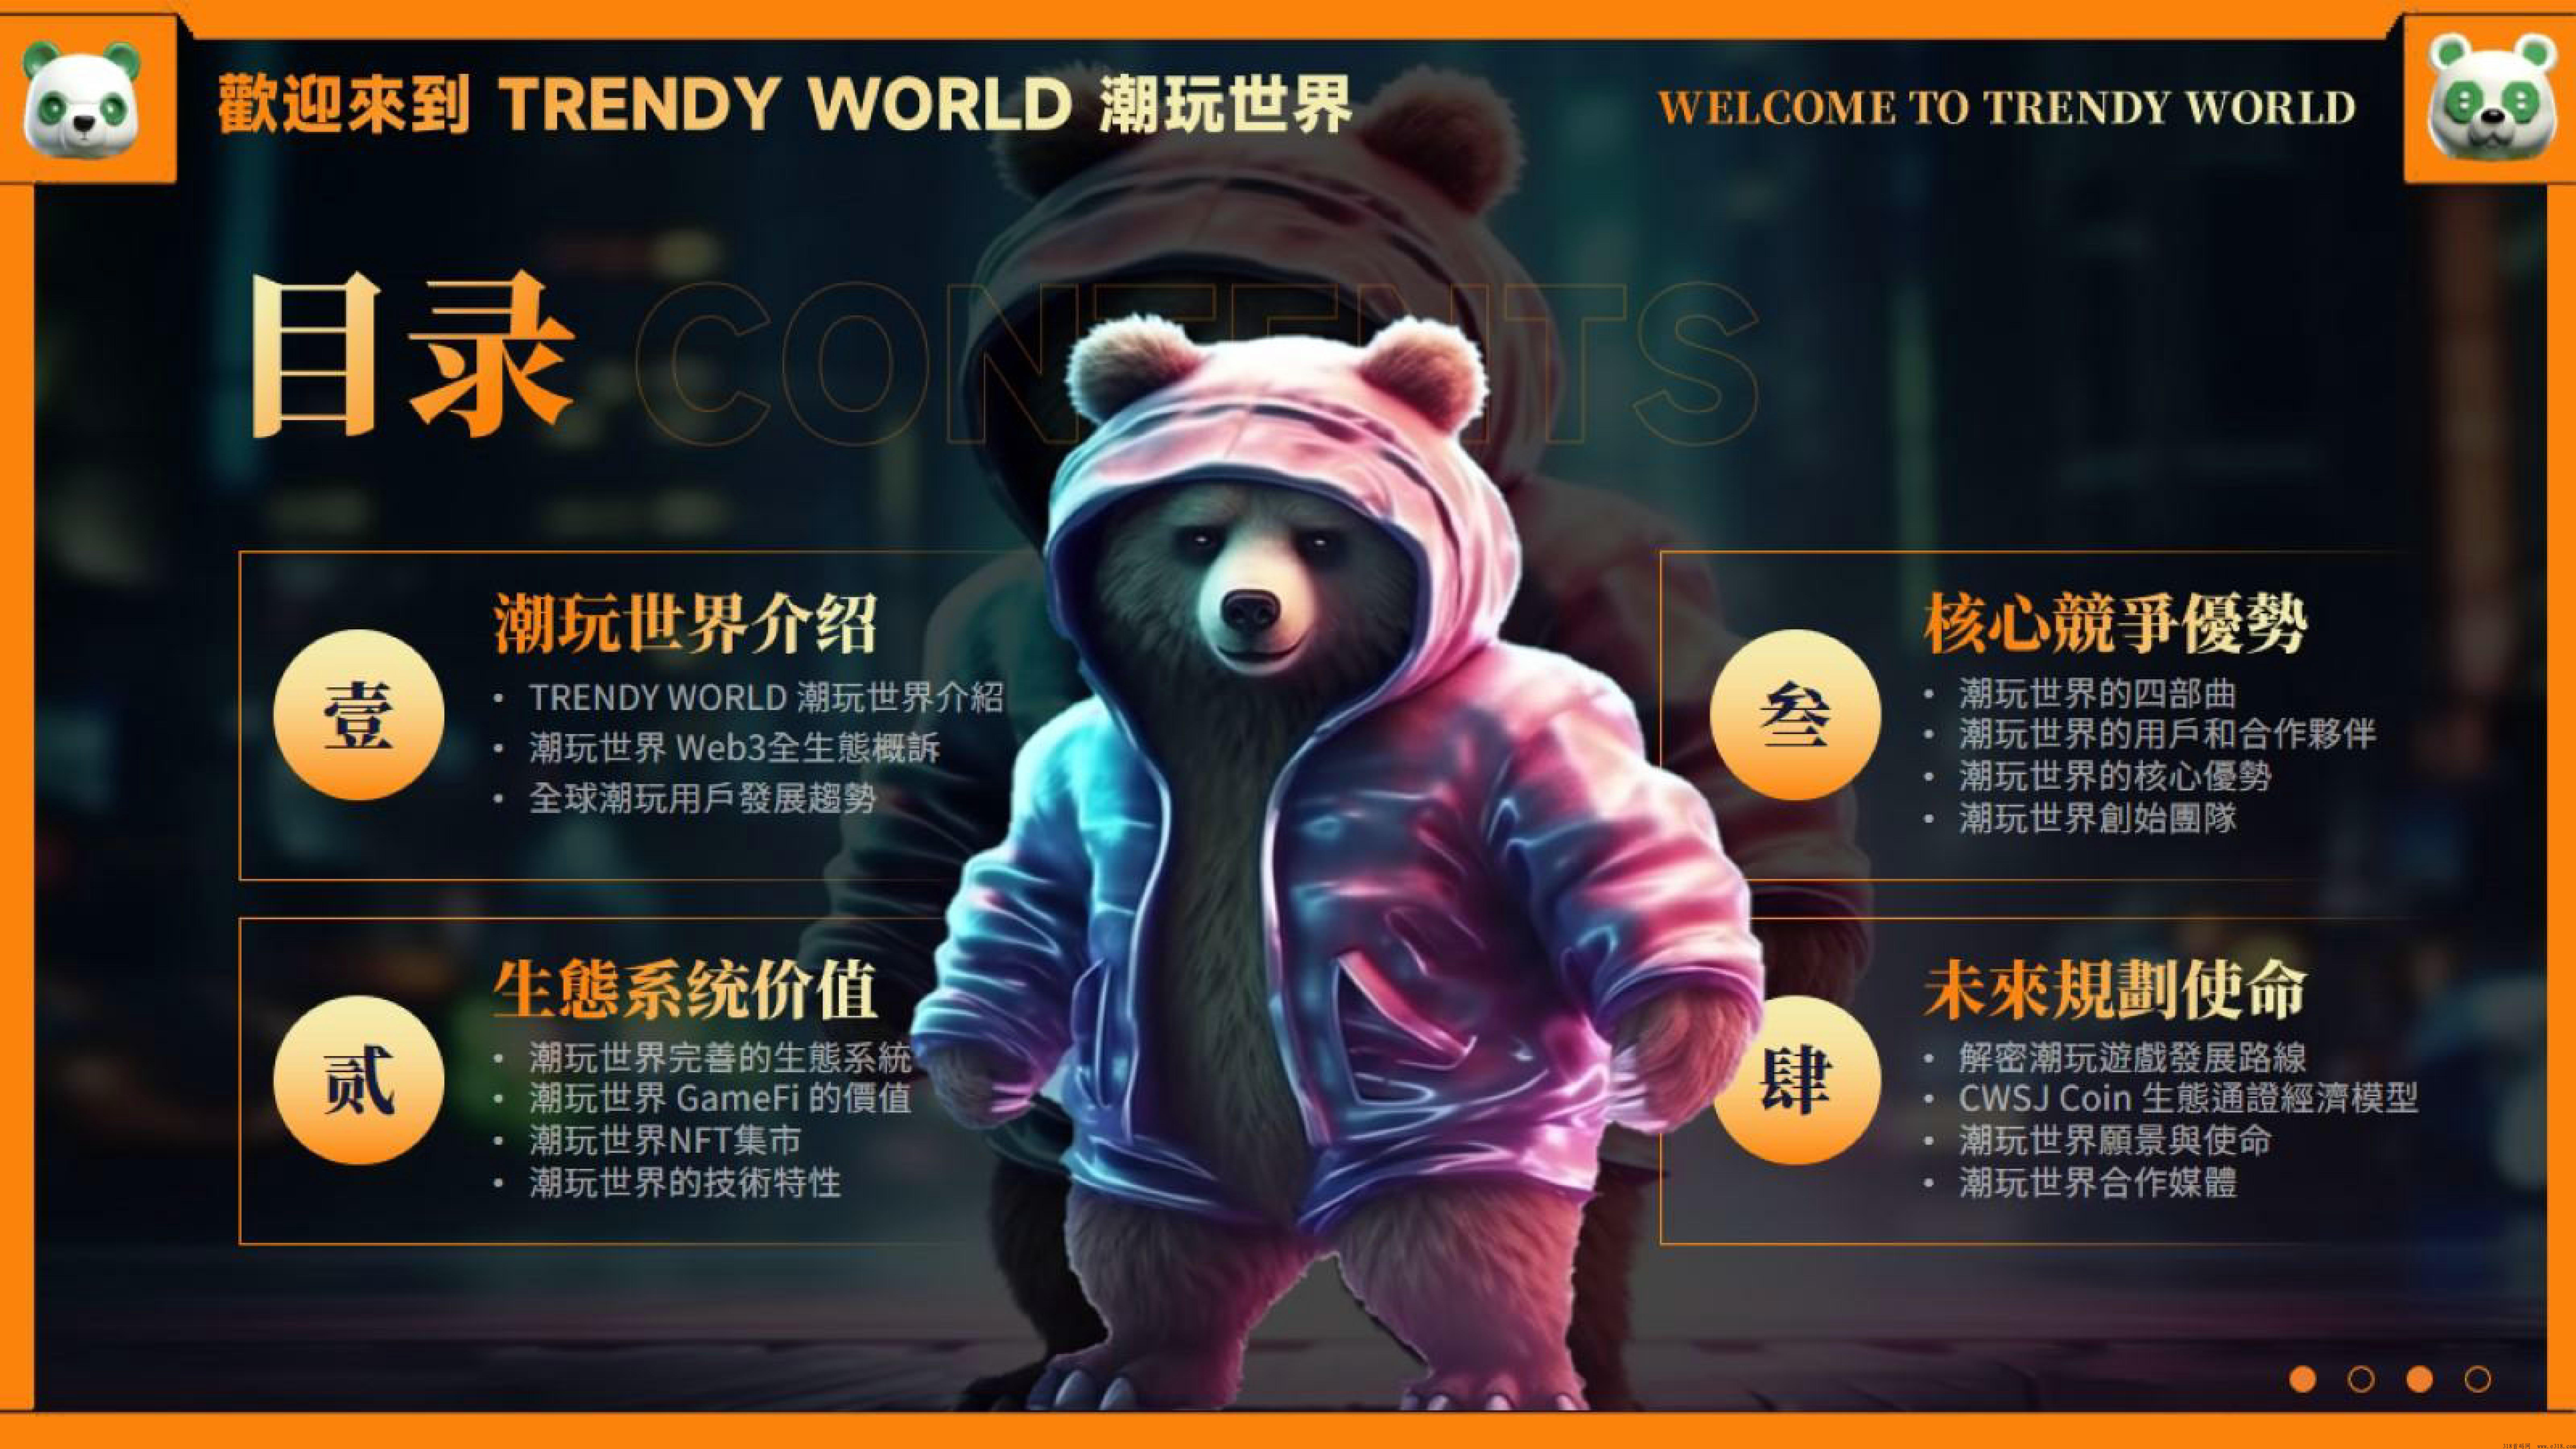 潮玩世界泰达熊web3.0泛娱乐平台，卷轴加潮玩模式，官方排线对接扶持玩家赠送渠道收益，可以零撸泰达熊